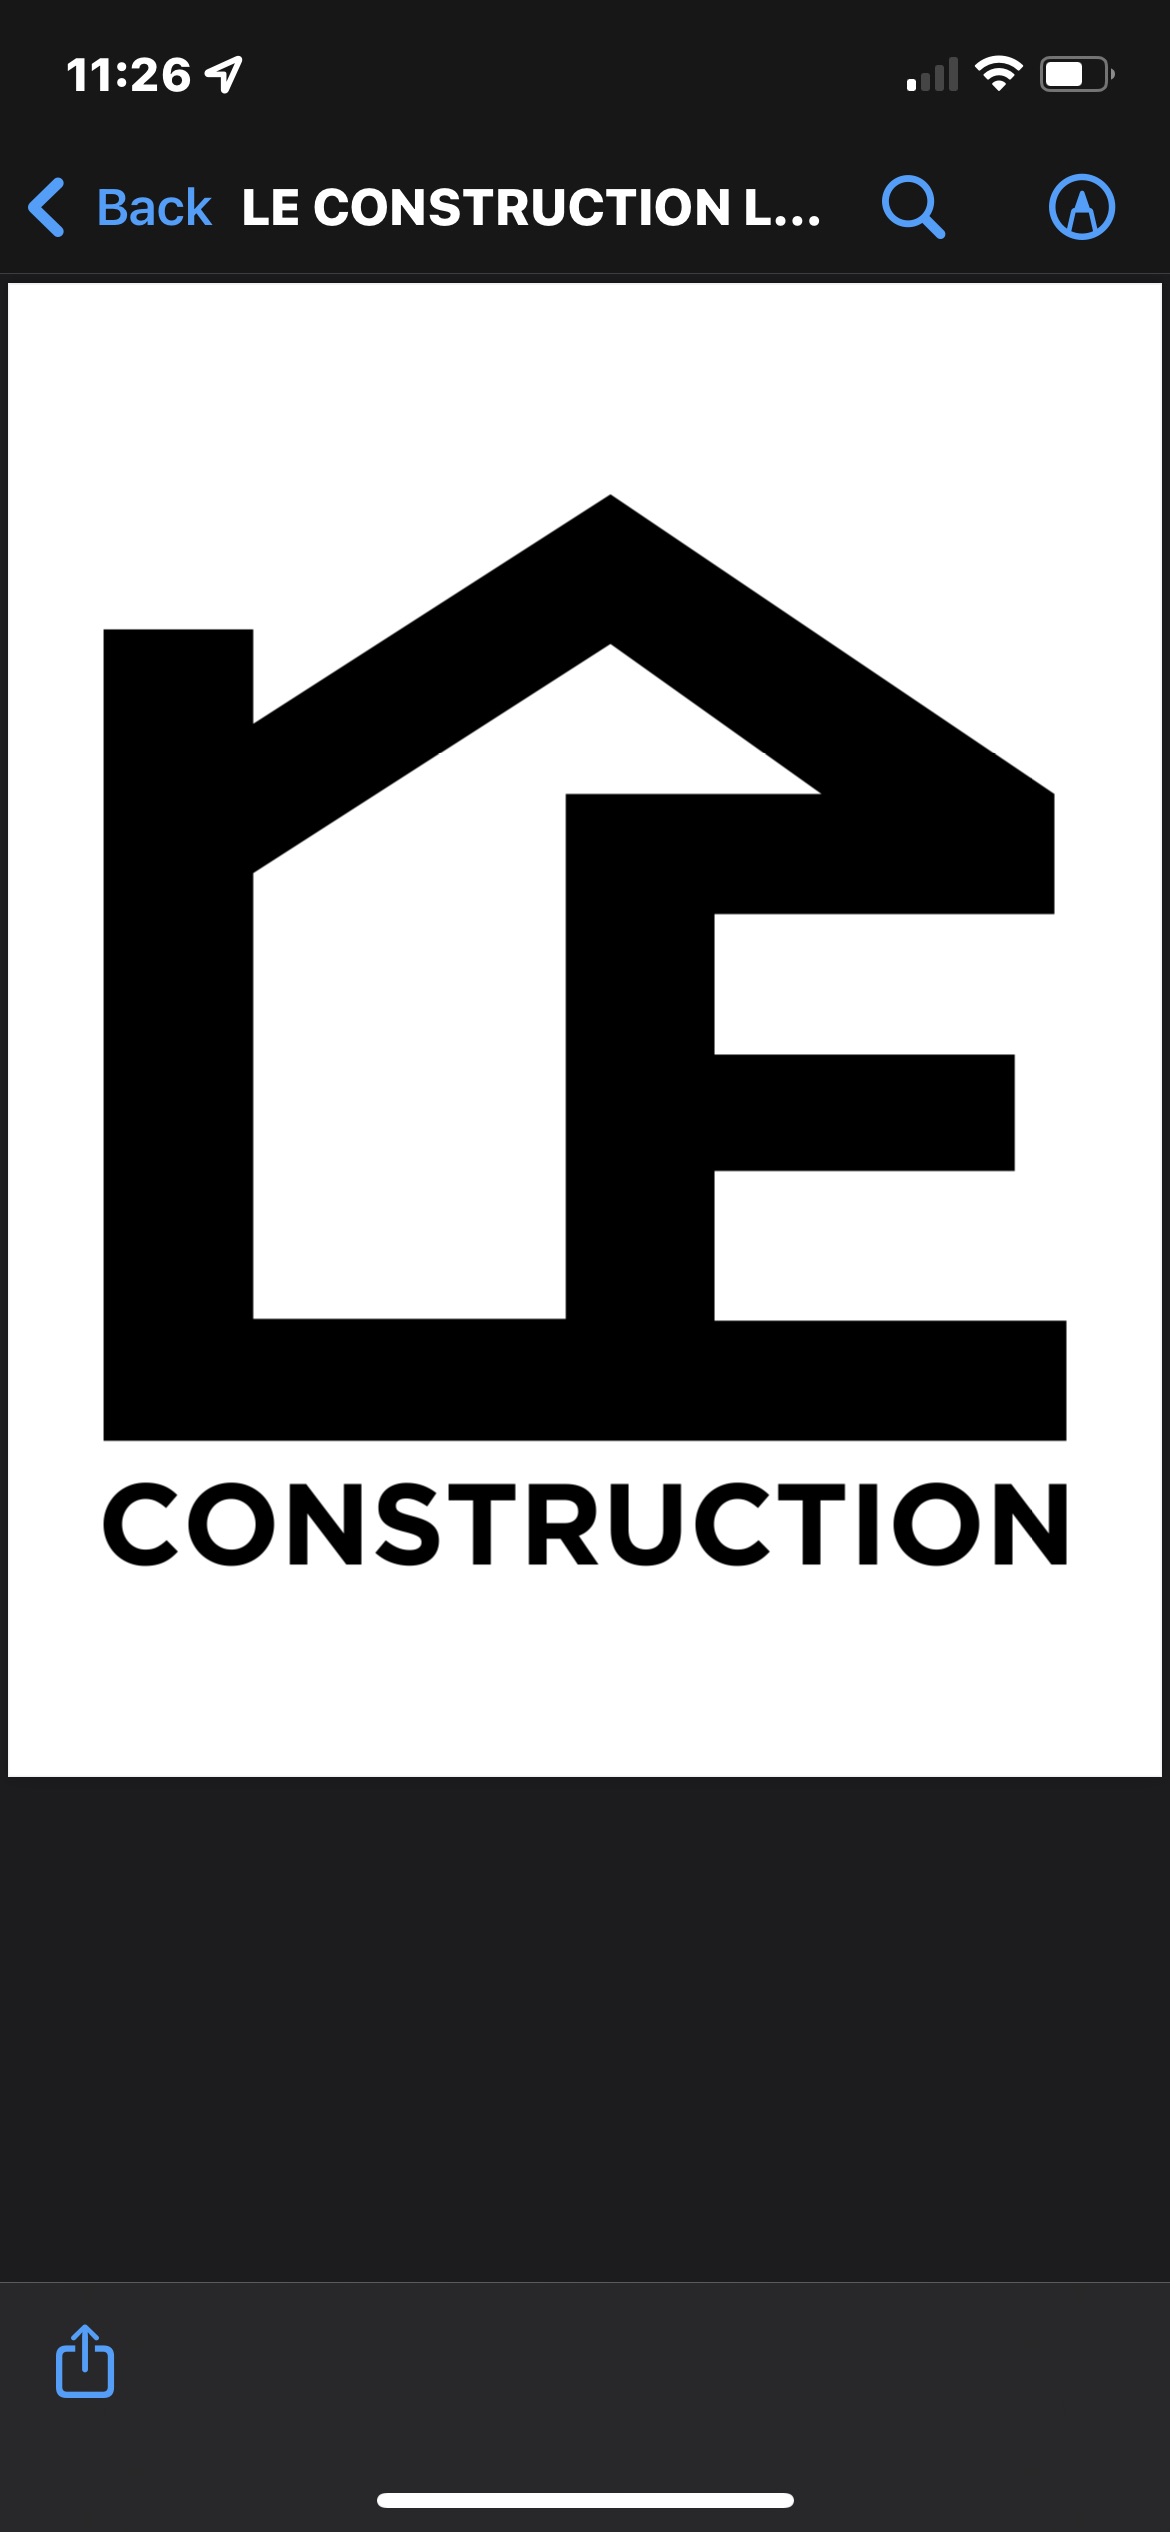 L.E. Construction, LLC Logo